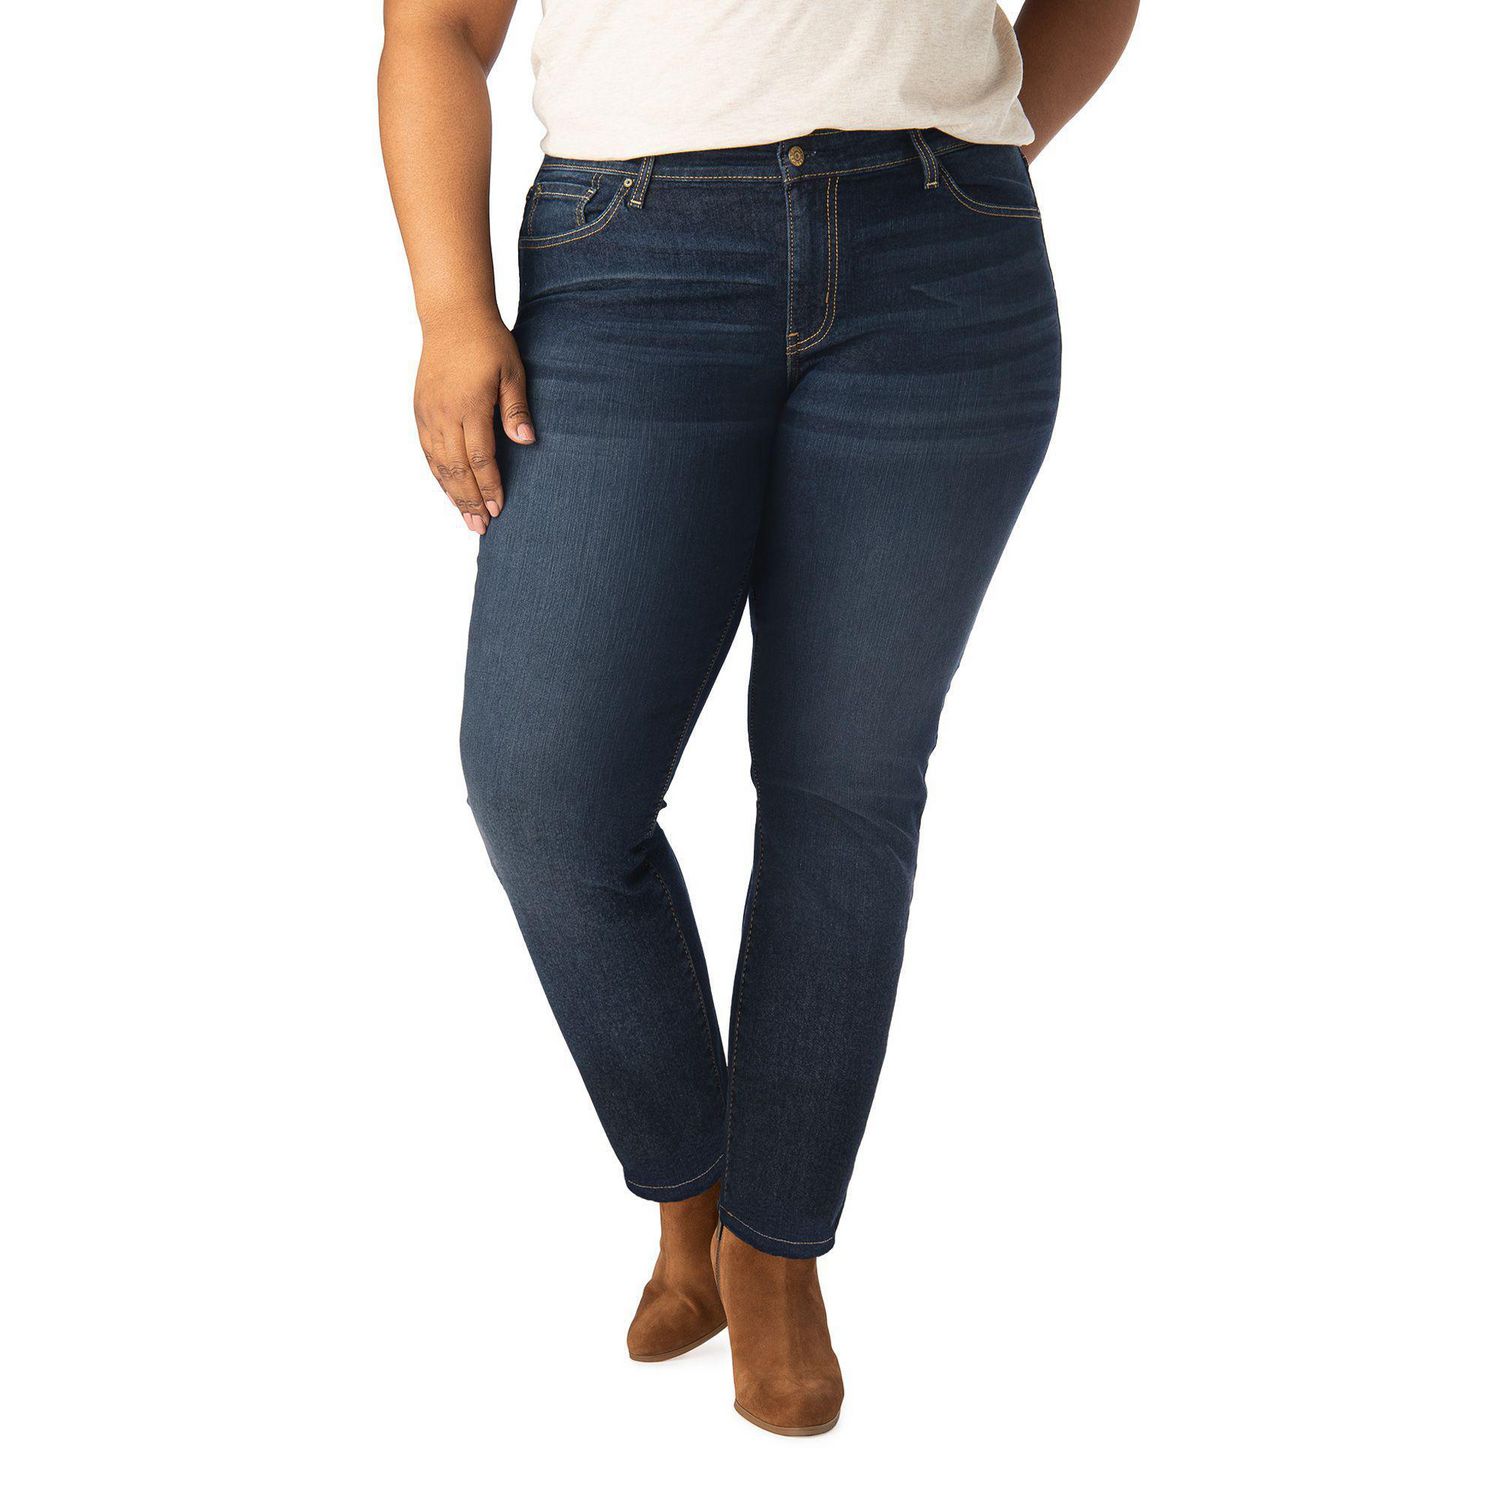 levi's plus size jeans canada